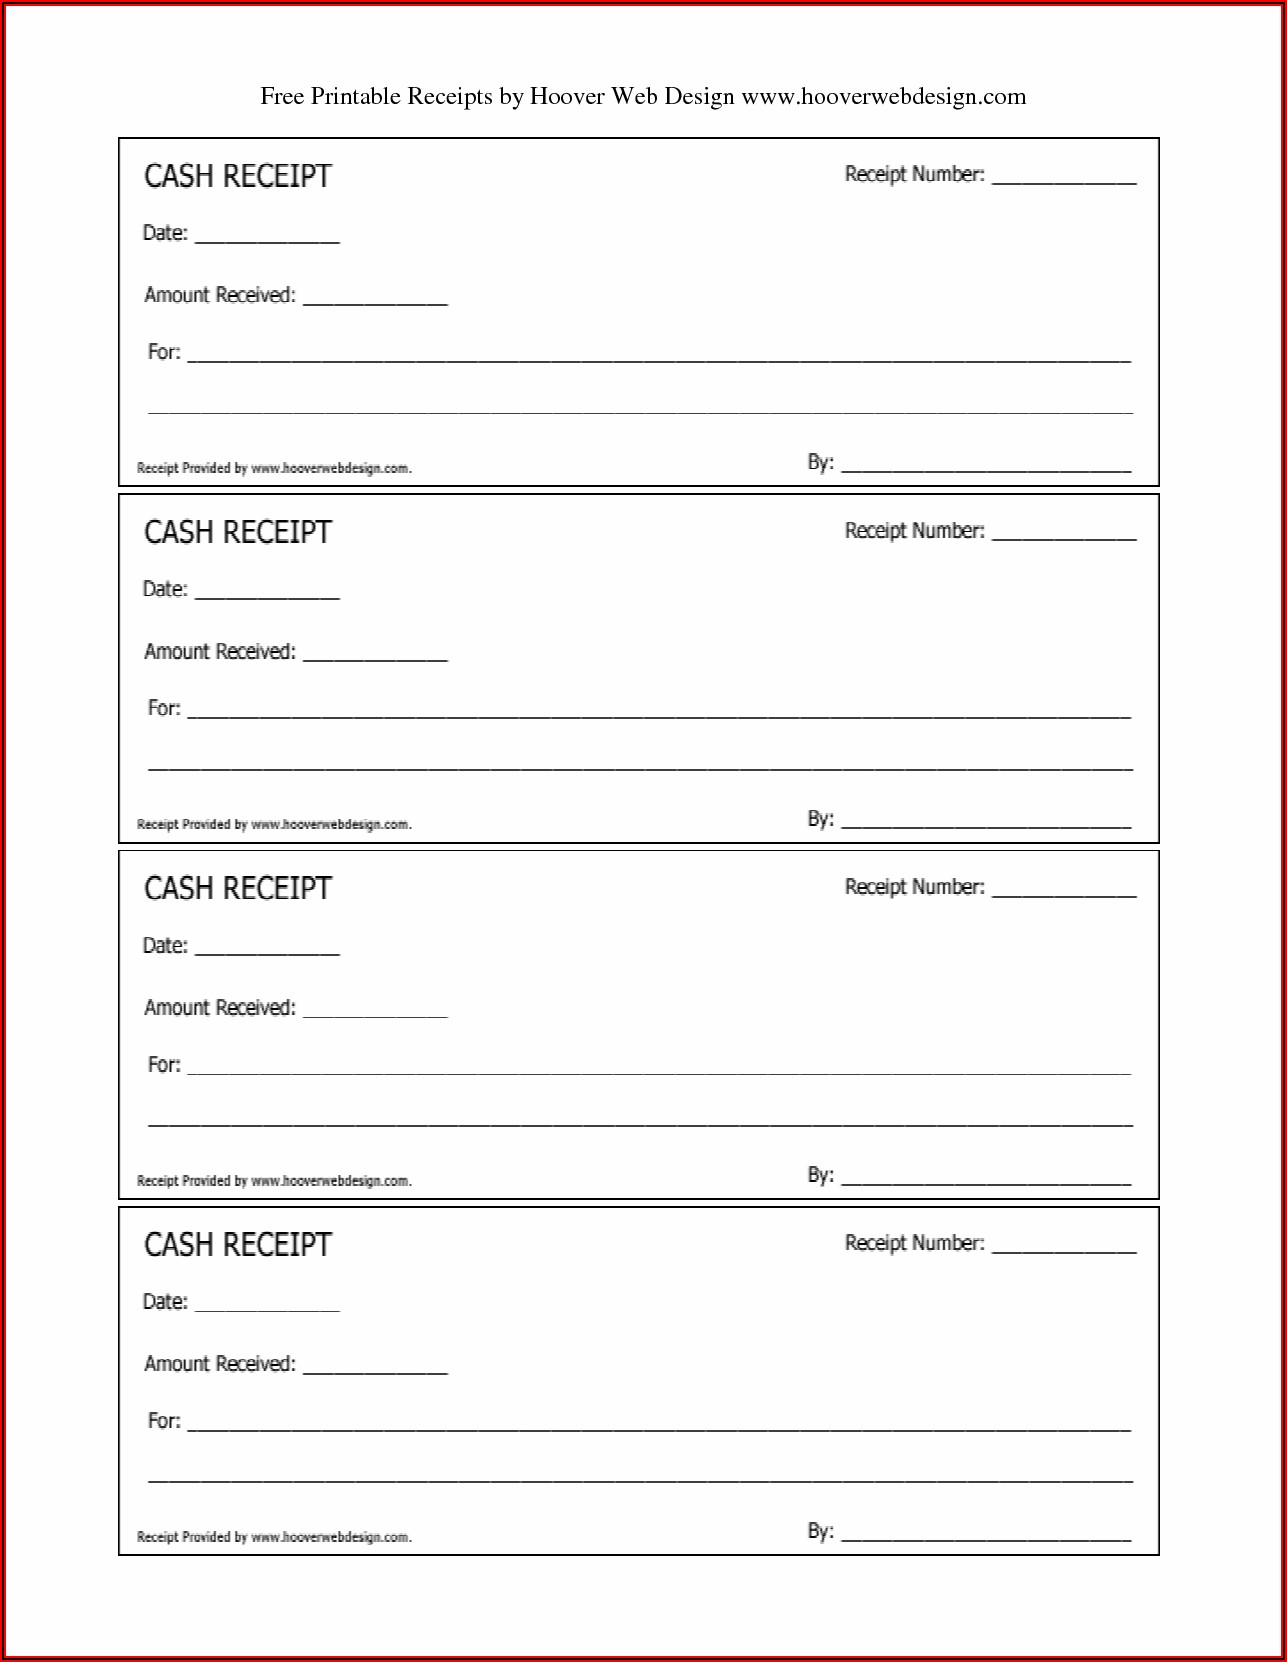 Free Receipt Forms Printable